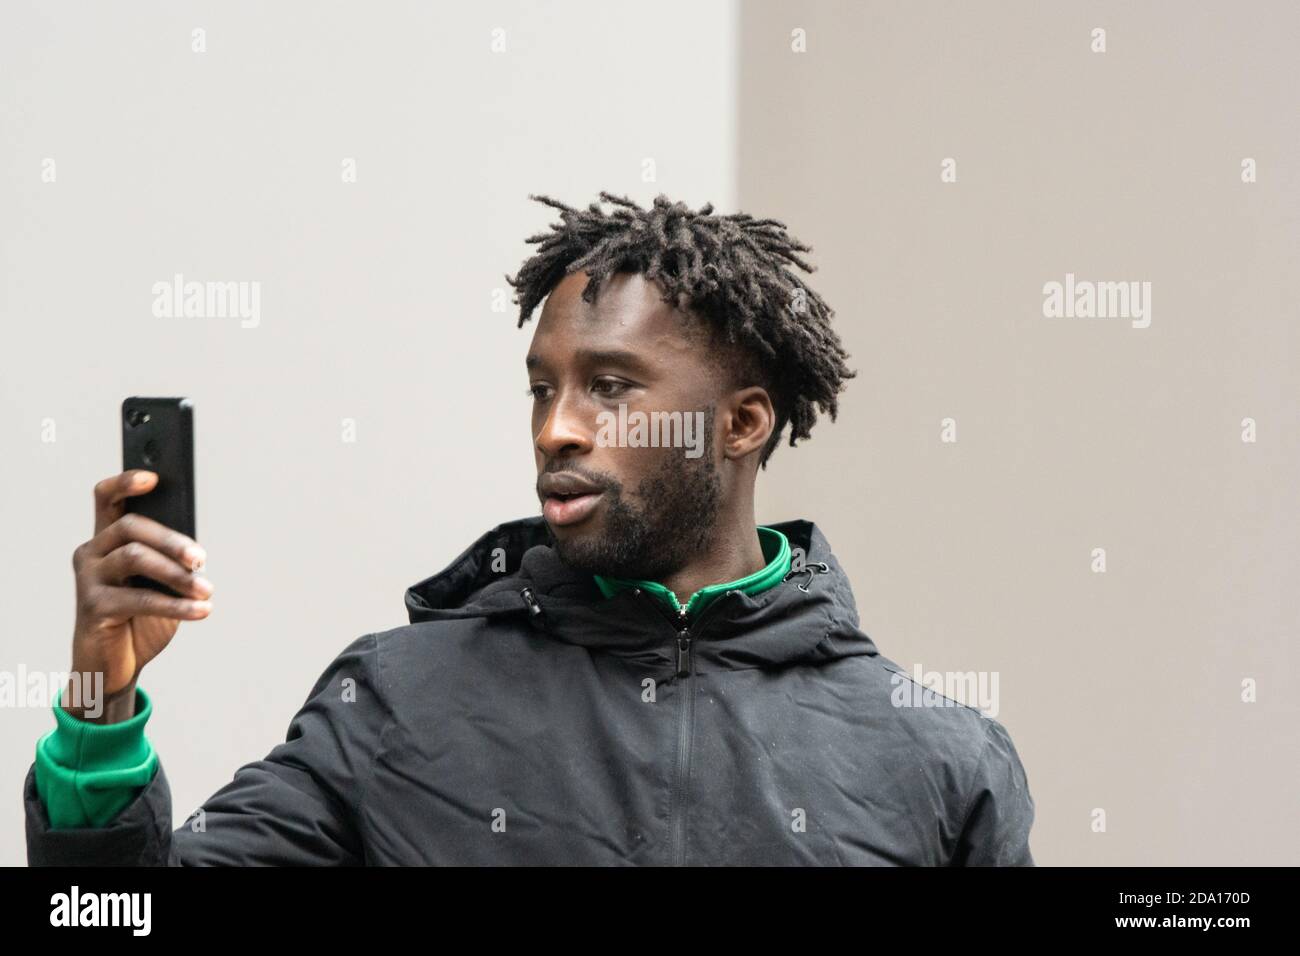 Jeune homme avec des dreadlocks tenant un smartphone lors de la manifestation de rue Manchester 08-11-2020, verrou de protestation anti-enfermement 2 covid19 Banque D'Images